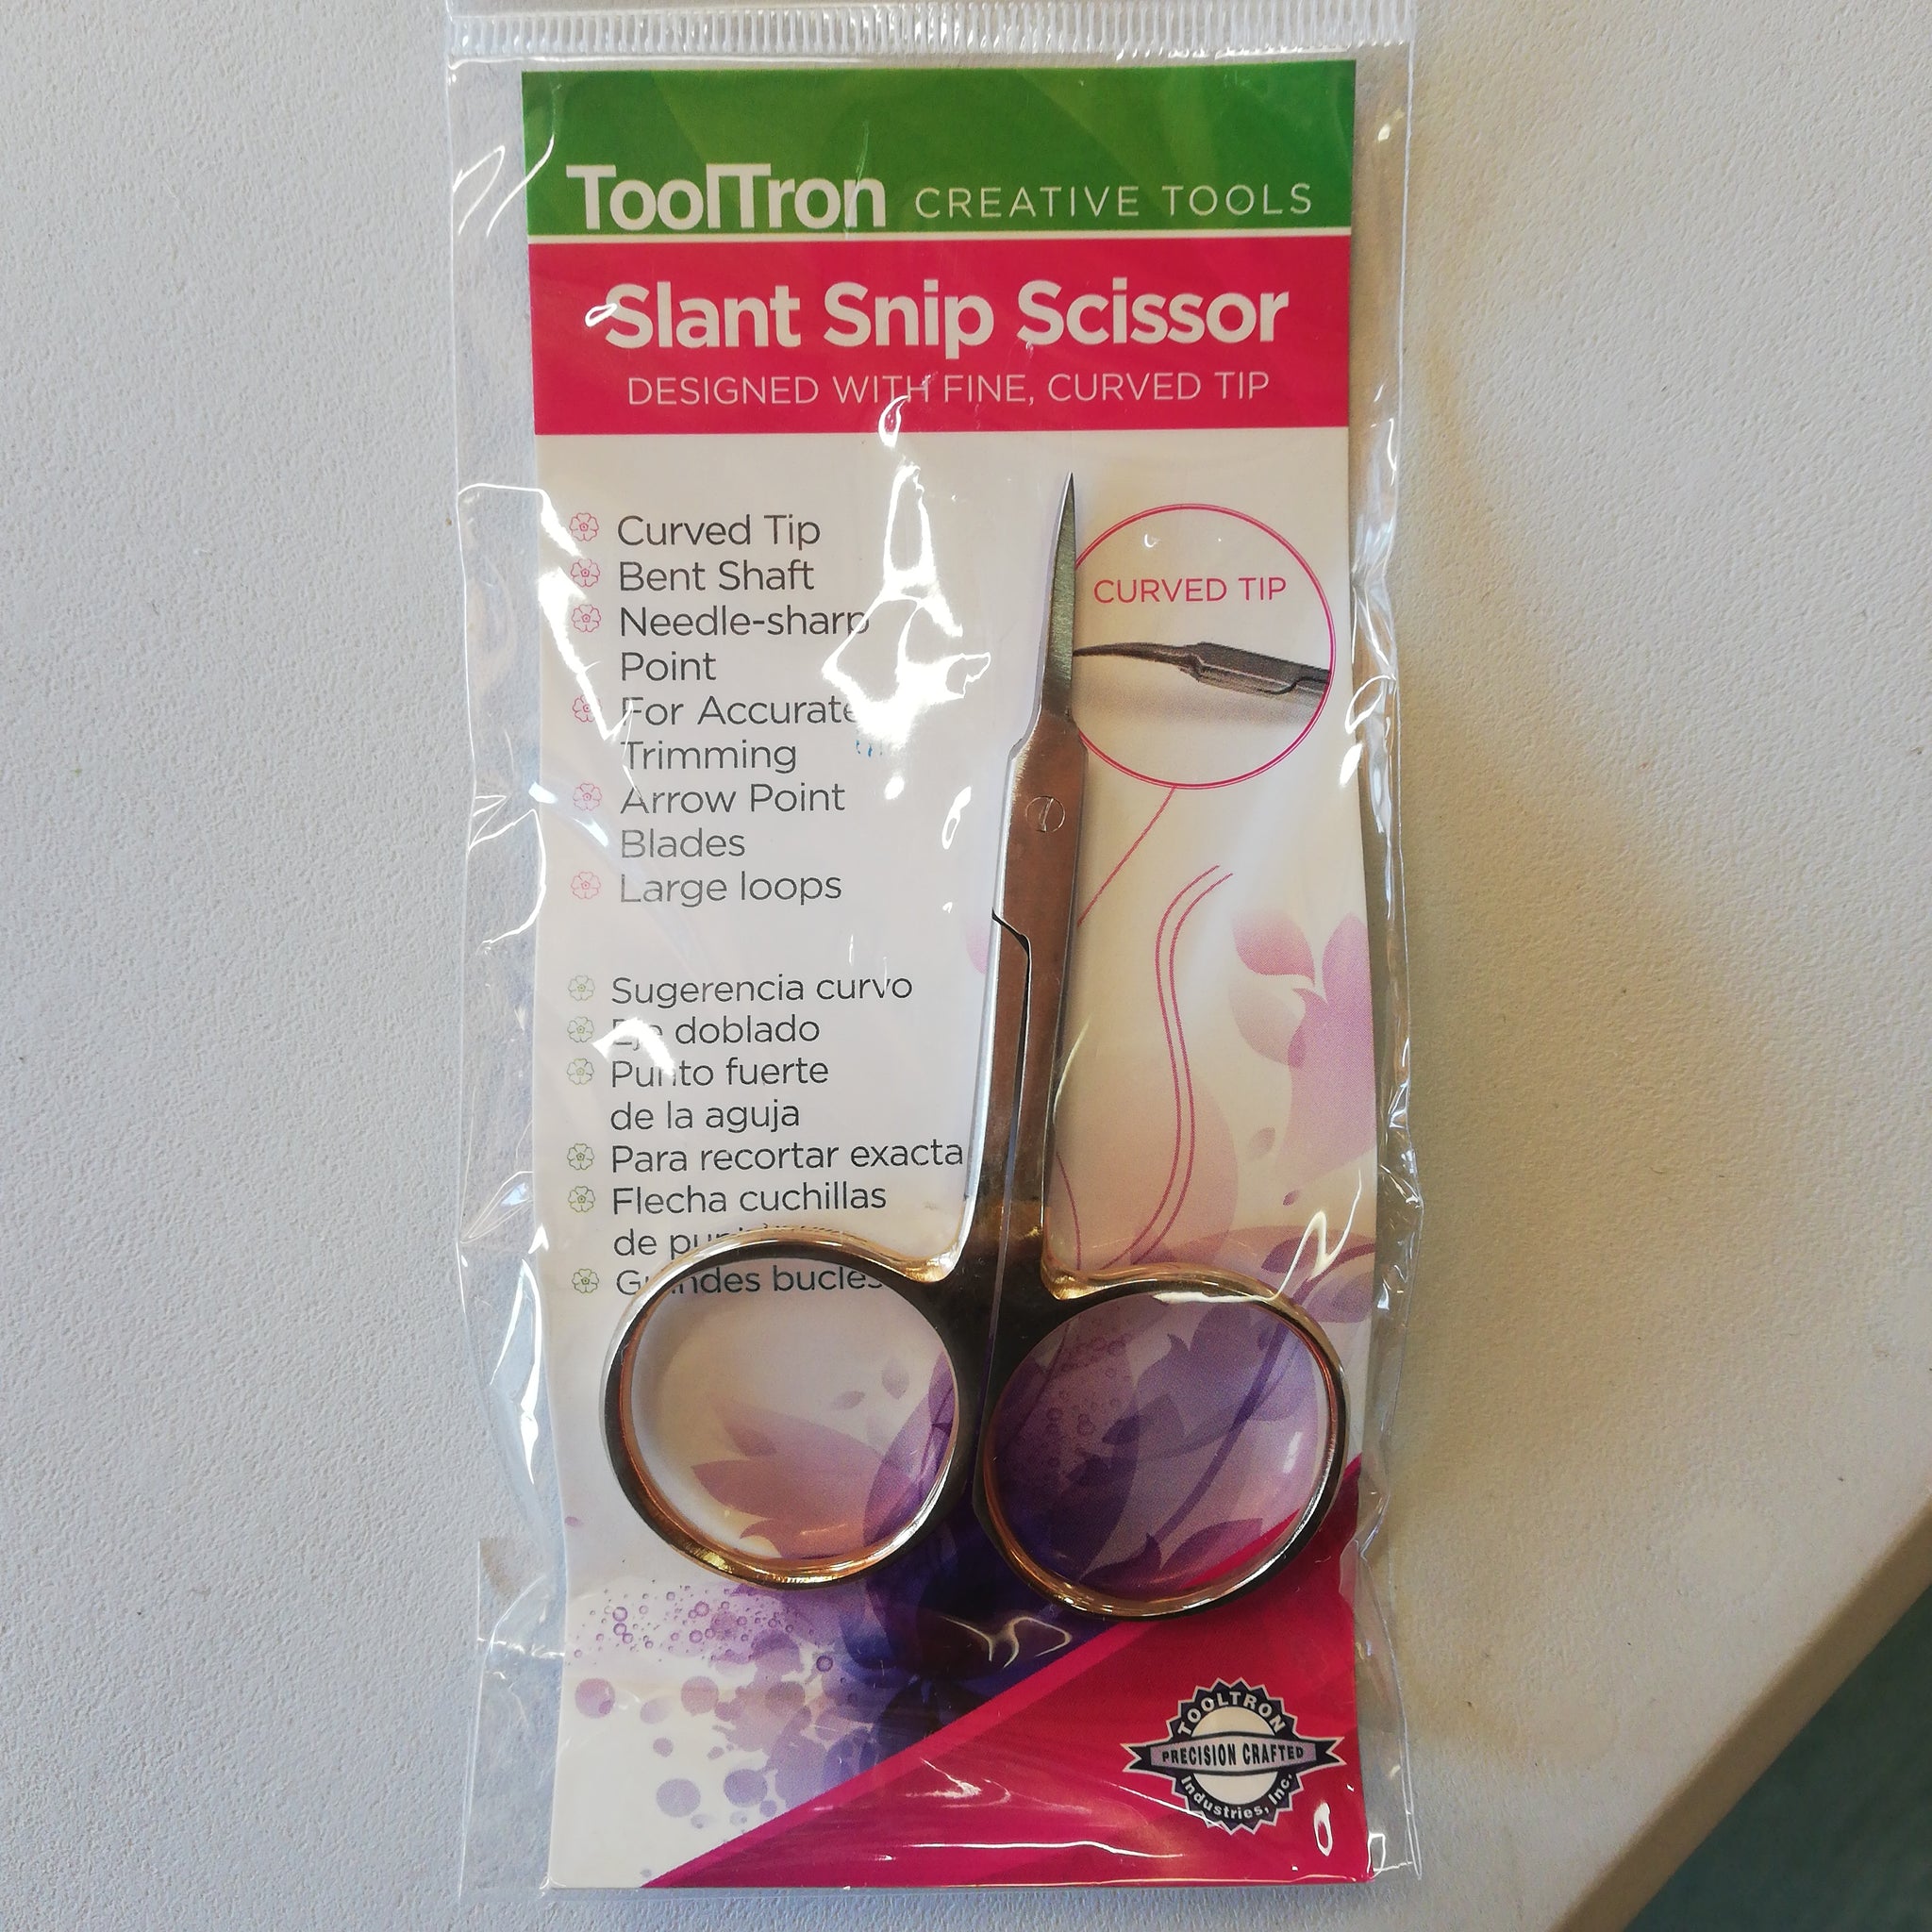 Slant Snip Scissors-curved tip